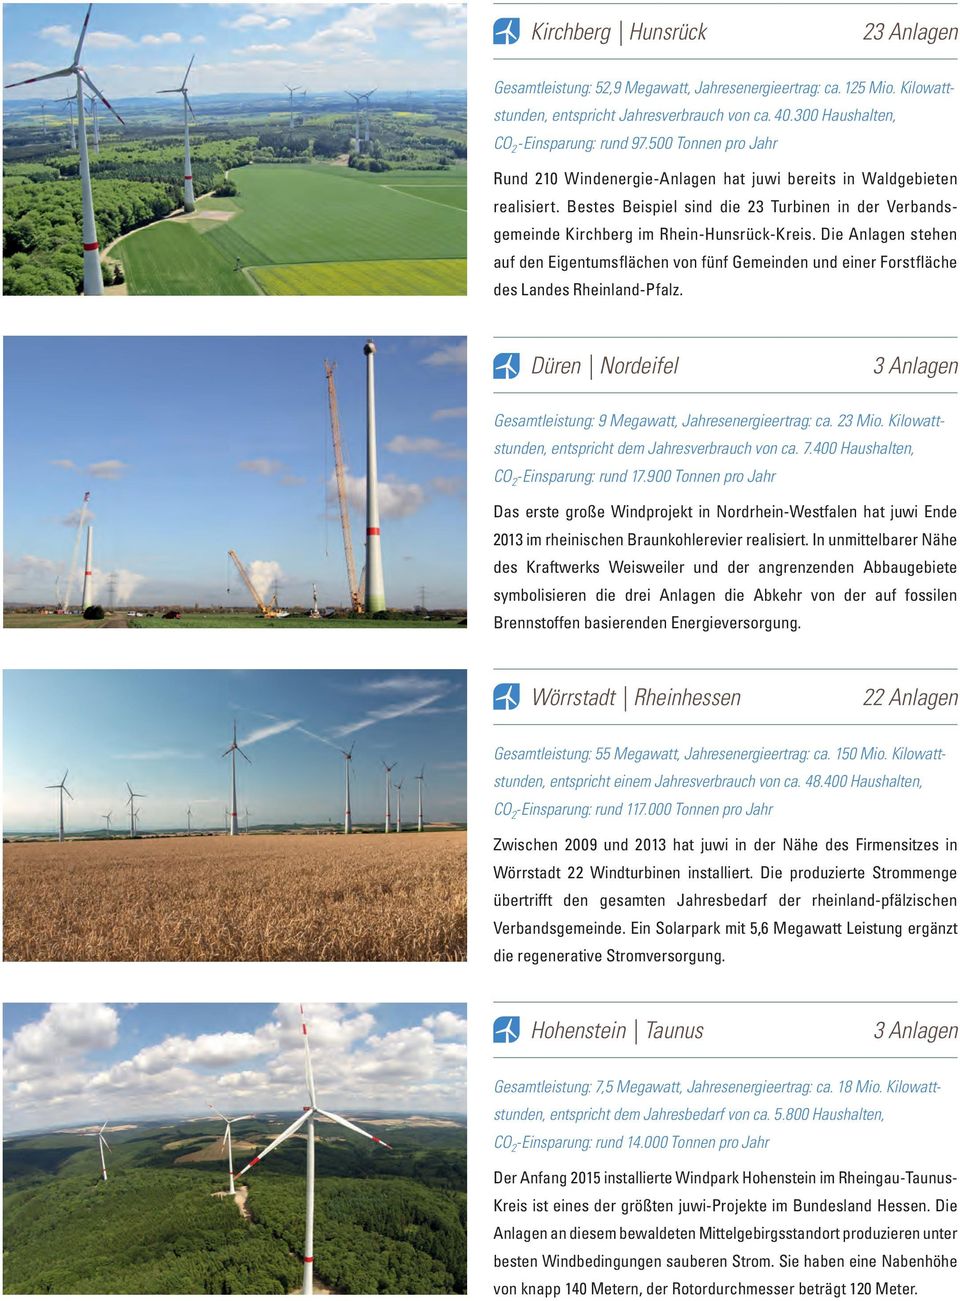 Die Anlagen stehen auf den Eigentumsflächen von fünf Gemeinden und einer Forstfläche des Landes Rheinland-Pfalz. Düren Nordeifel 3 Anlagen Gesamtleistung: 9 Megawatt, Jahresenergieertrag: ca. 23 Mio.